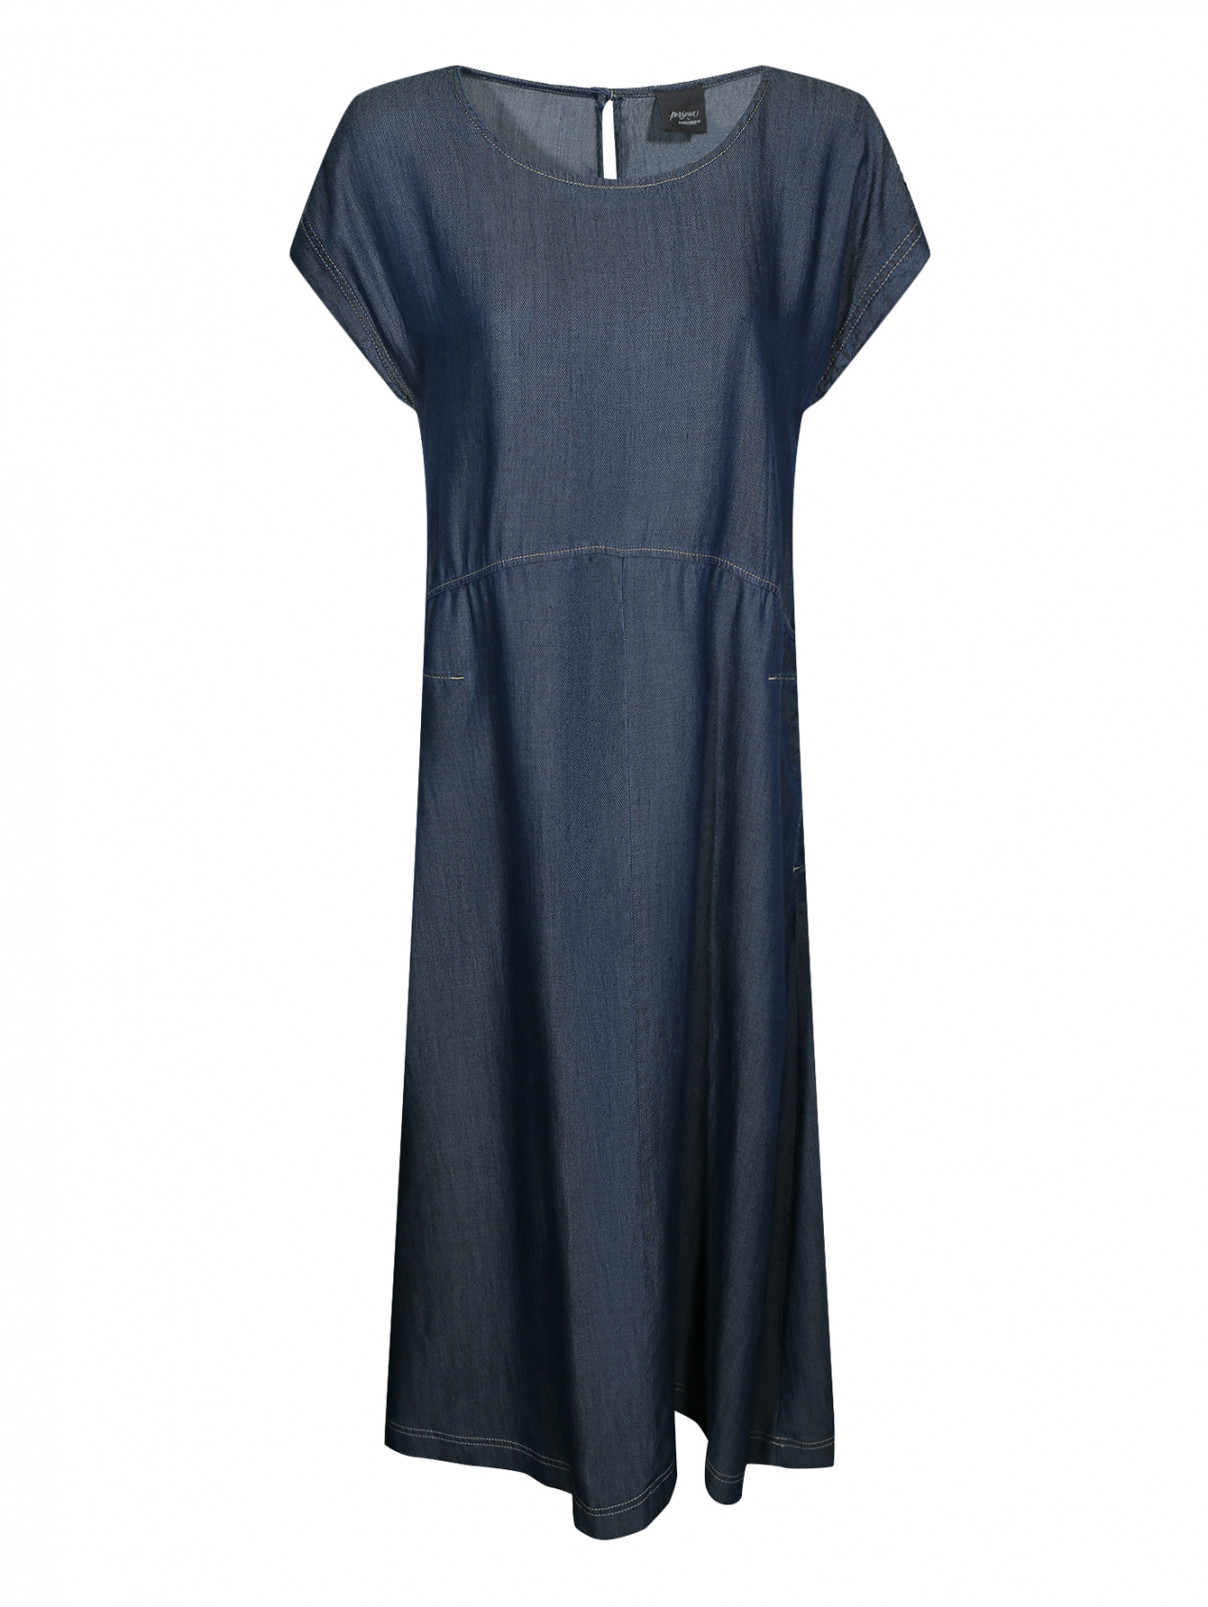 Платье свободного кроя с боковыми карманами Marina Rinaldi  –  Общий вид  – Цвет:  Синий